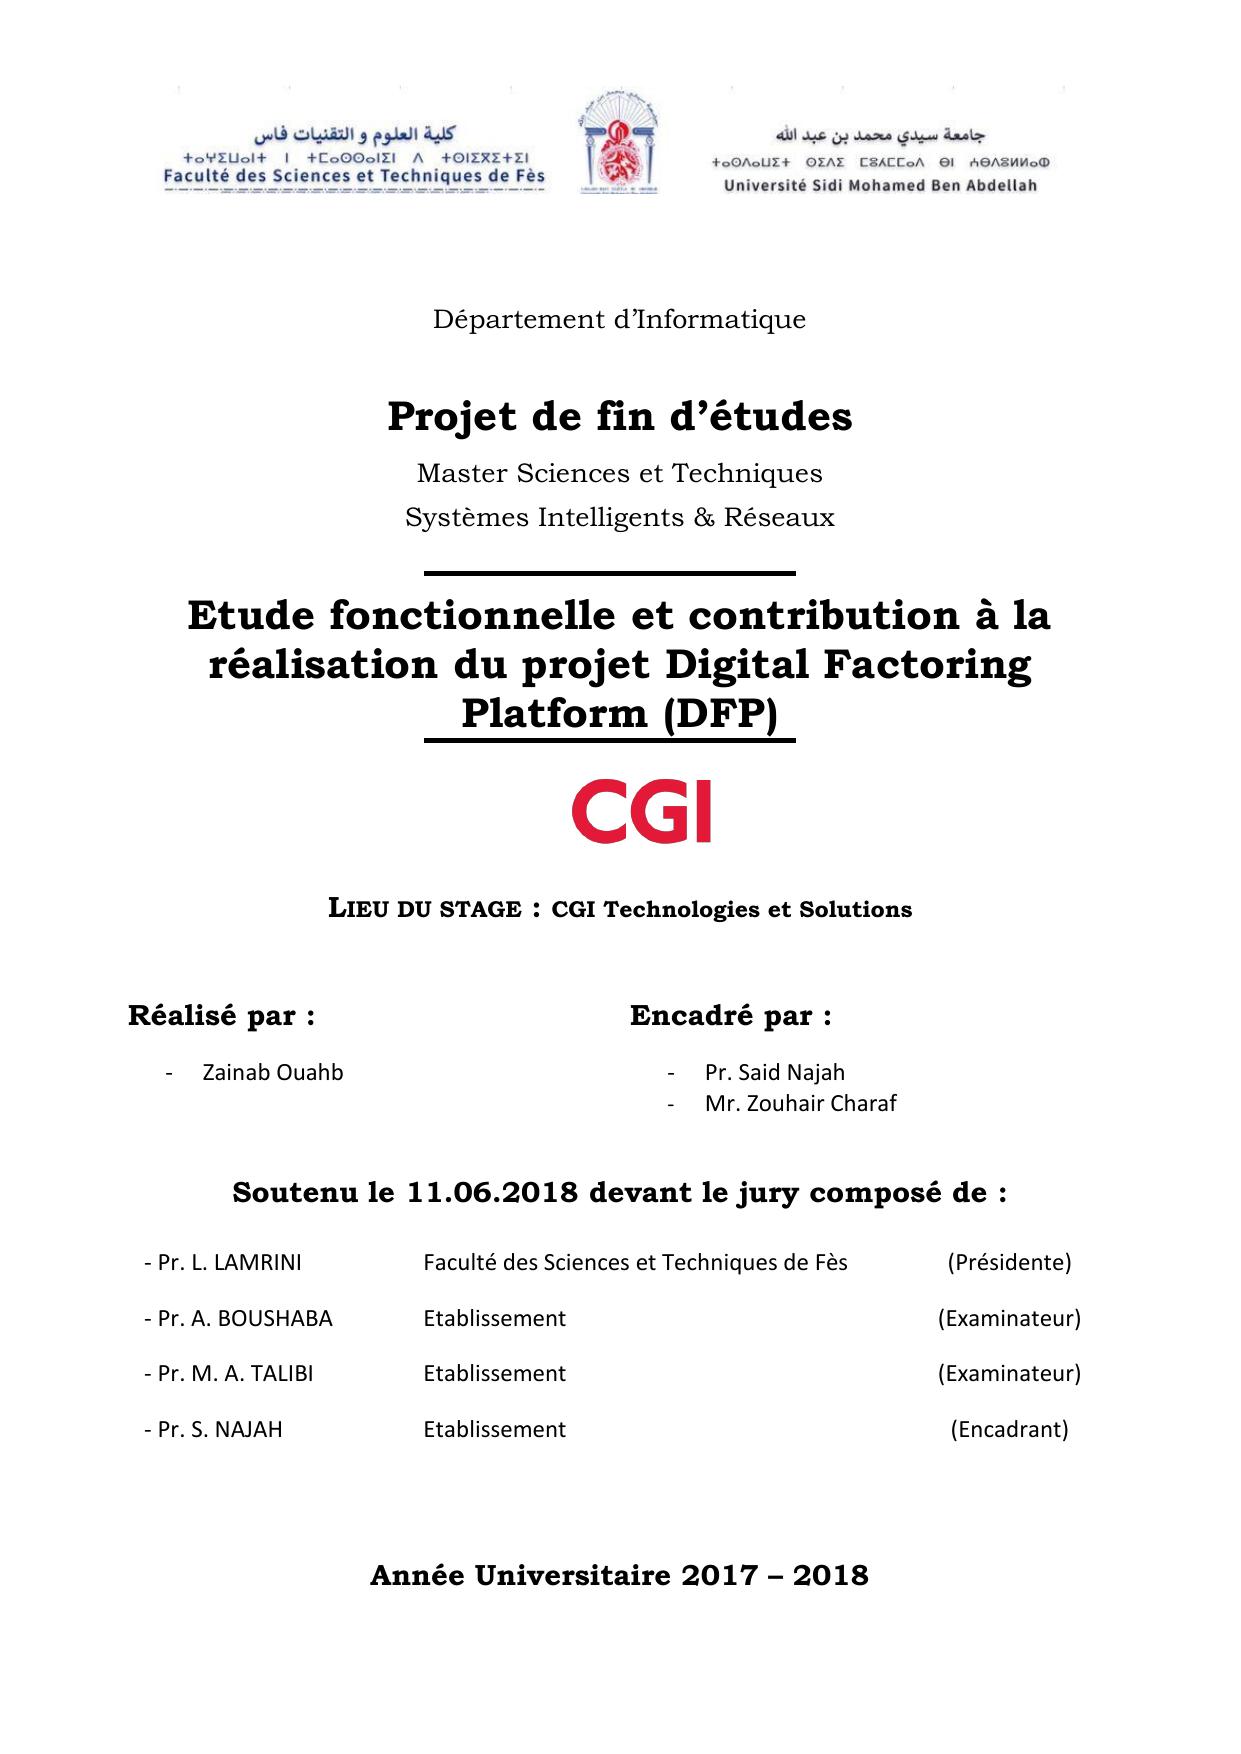 Etude fonctionnelle et contribution à la réalisation du projet Digital Factoring Platform (DFP)